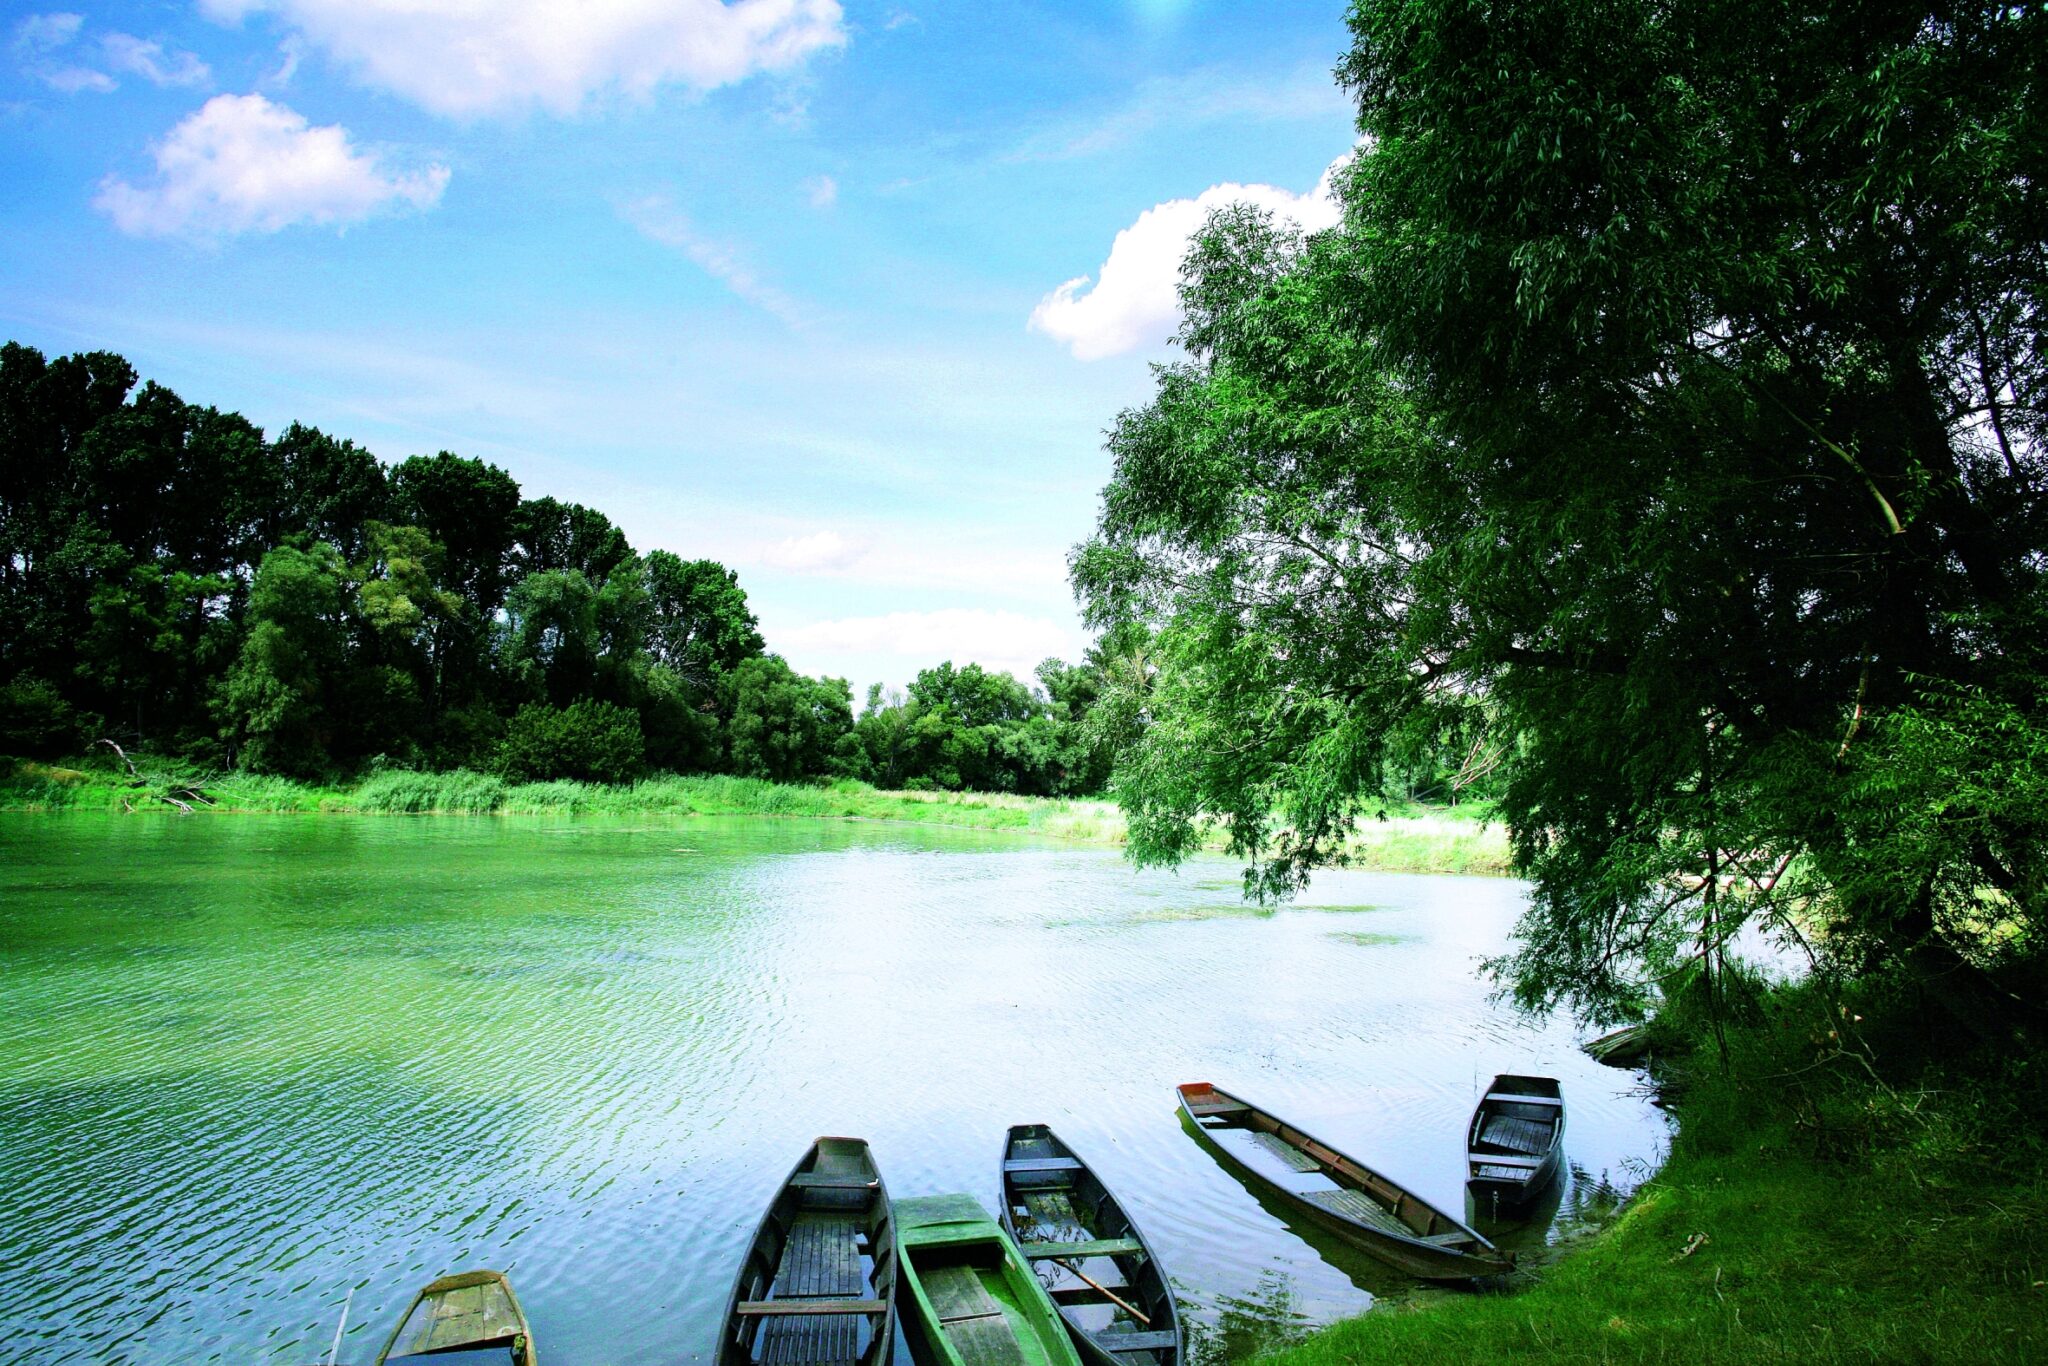 Das Bild zeigt ein Gewässer in der Lobau, dem Wiener Teil des Nationalparks Donau-Auen. Am Ufer ist dichter Baumbestand zu sehen, im Vordergrund liegen einige Holzboote im Wasser. © Jürgen Staudacher